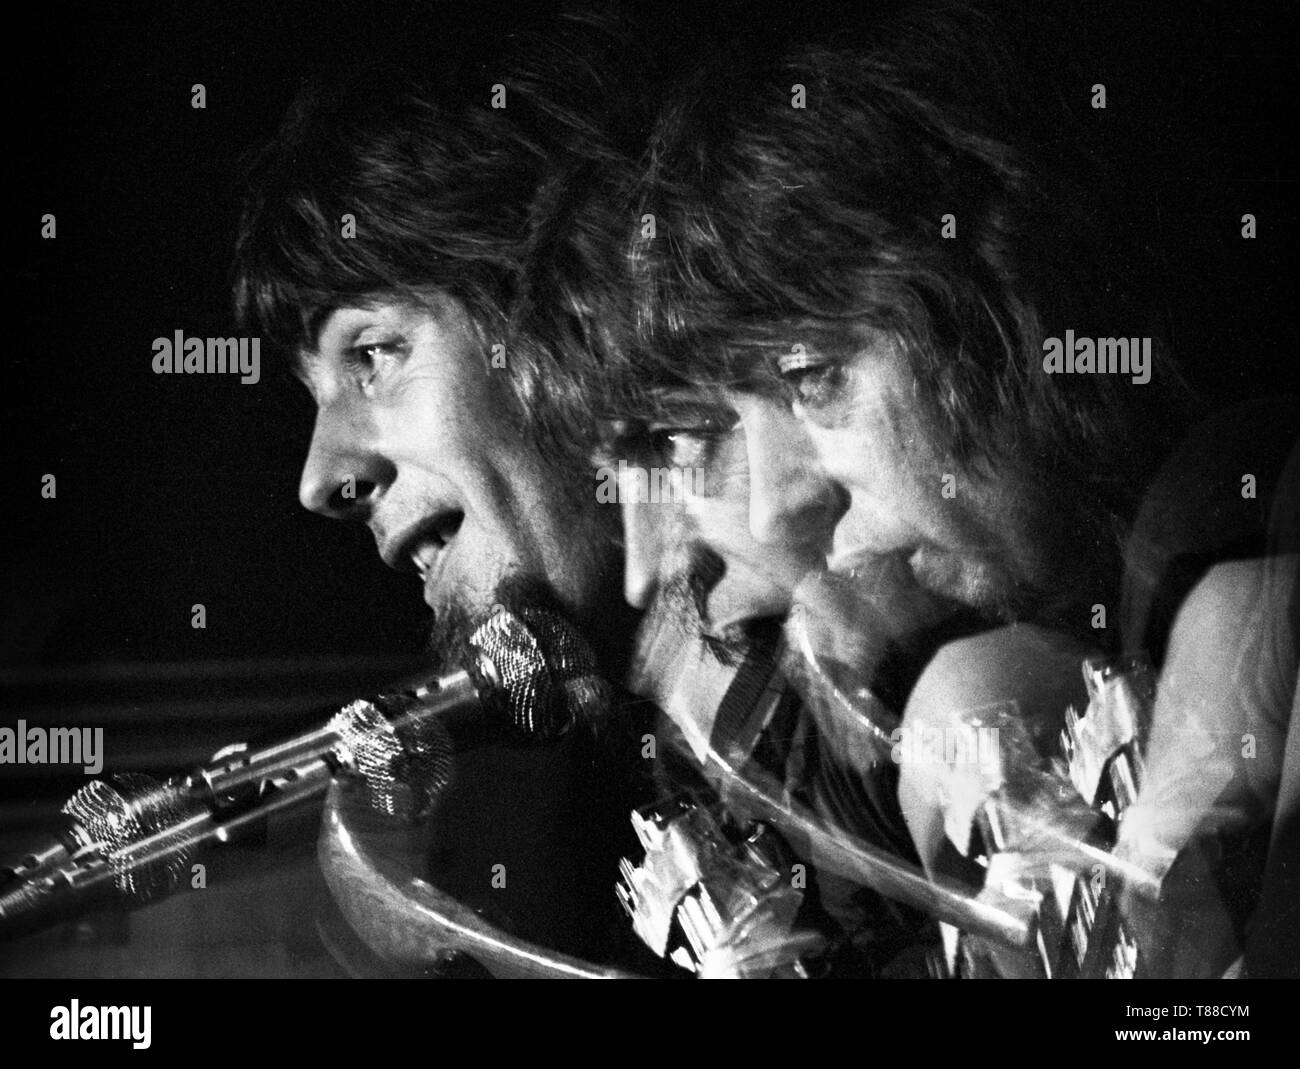 Amsterdam, Niederlande - ca. 1975: Englisch Blues Musiker John Mayall führt live auf der Bühne in Amsterdam, Niederlande, circa 1975. (Foto von Gijsbert Hanekroot) Stockfoto